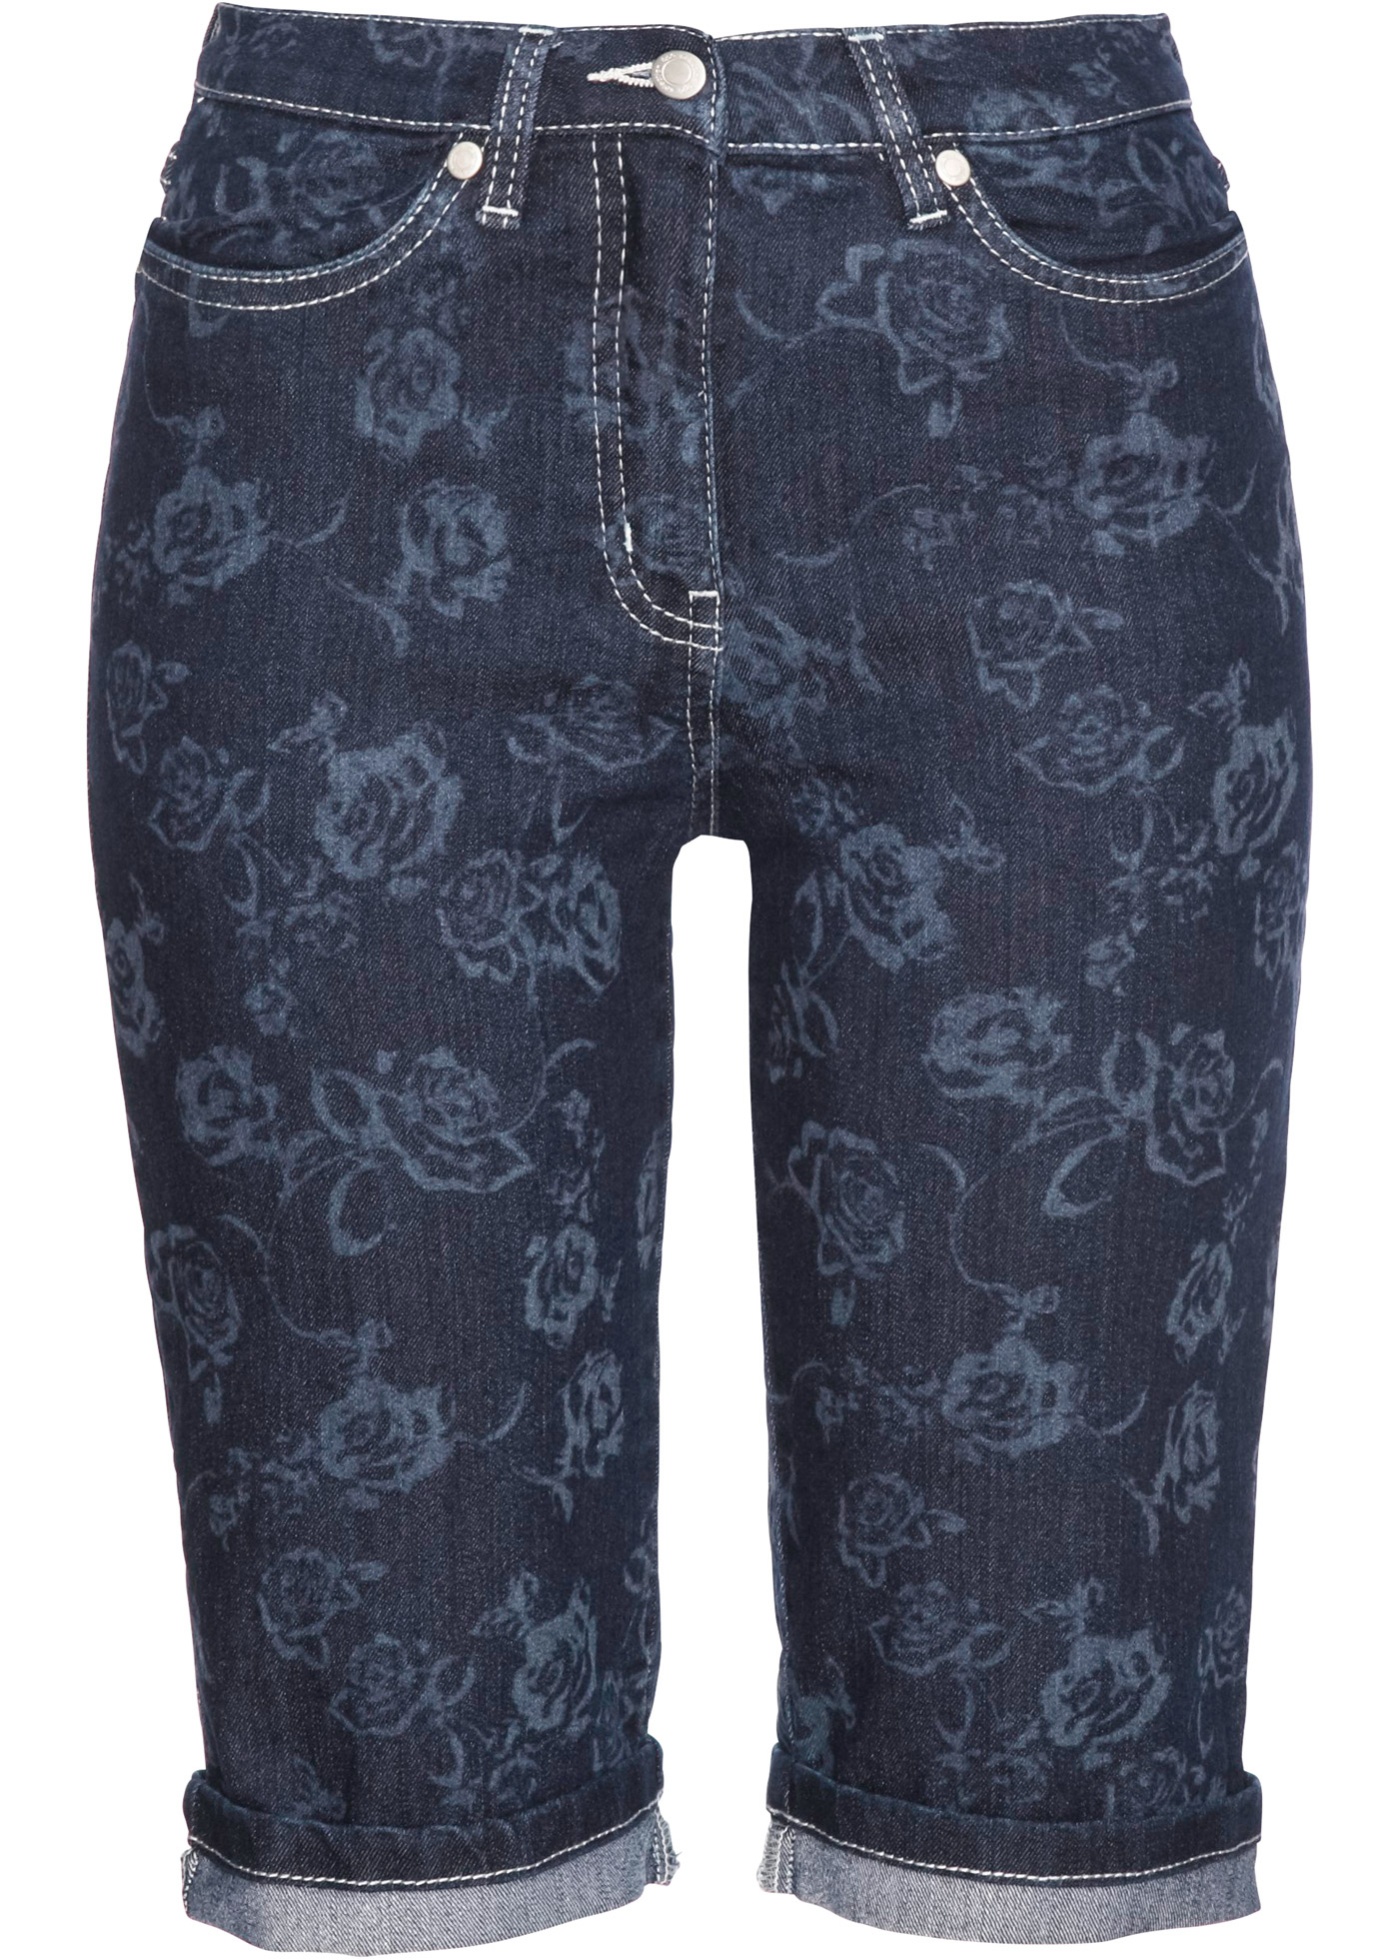 Stilvolle Jeans-Bermudas mit Beinumschlag (93665781) in darkblue stone/weiß bedruckt